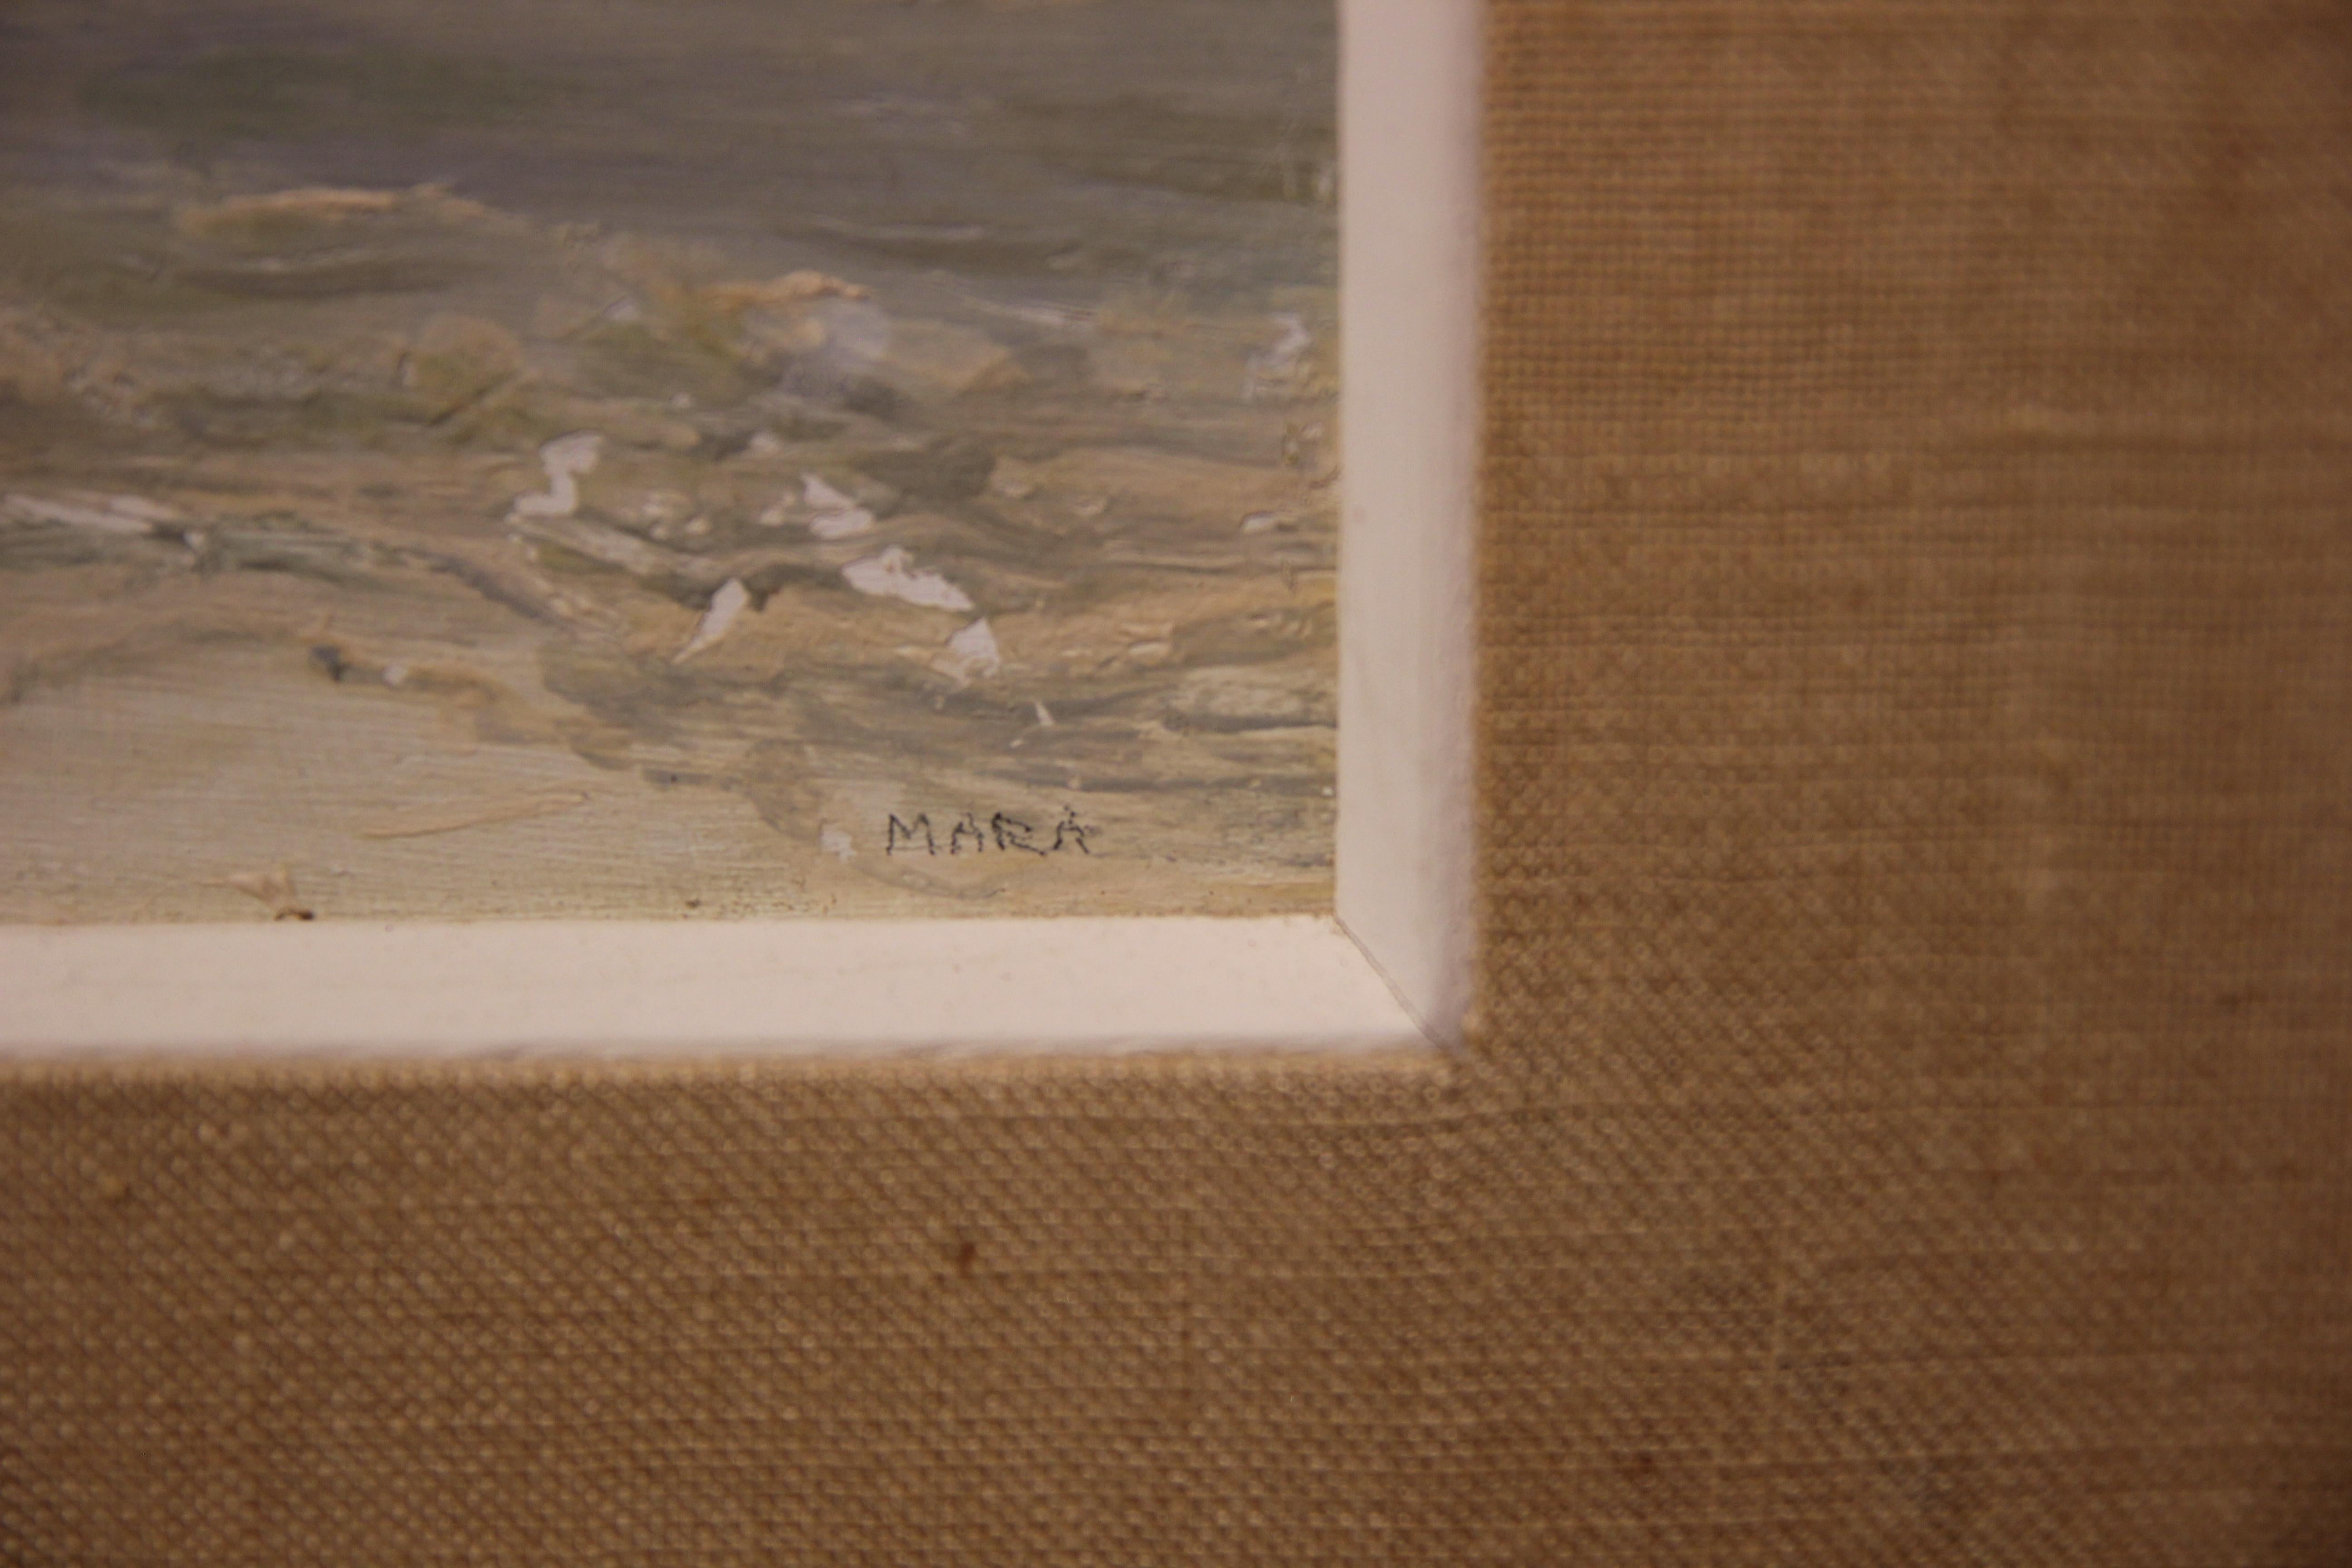 Naturalistisches impressionistisches Meereslandschaftsgemälde im Woodstock-Stil, signiert Mara (Braun), Abstract Painting, von Unknown